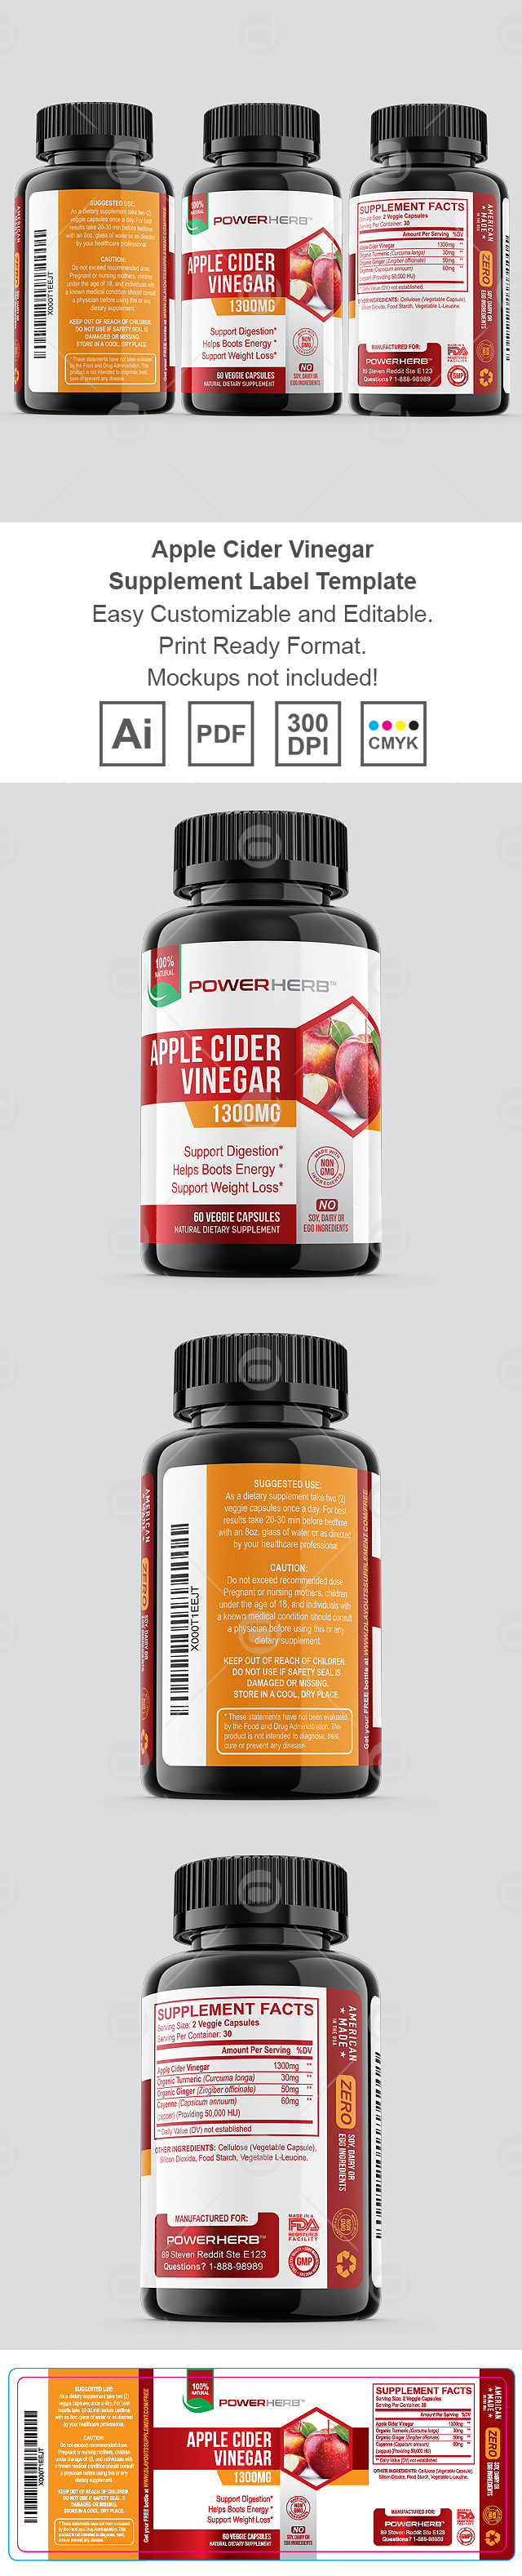 Apple Cider Vinegar Supplement Label Template